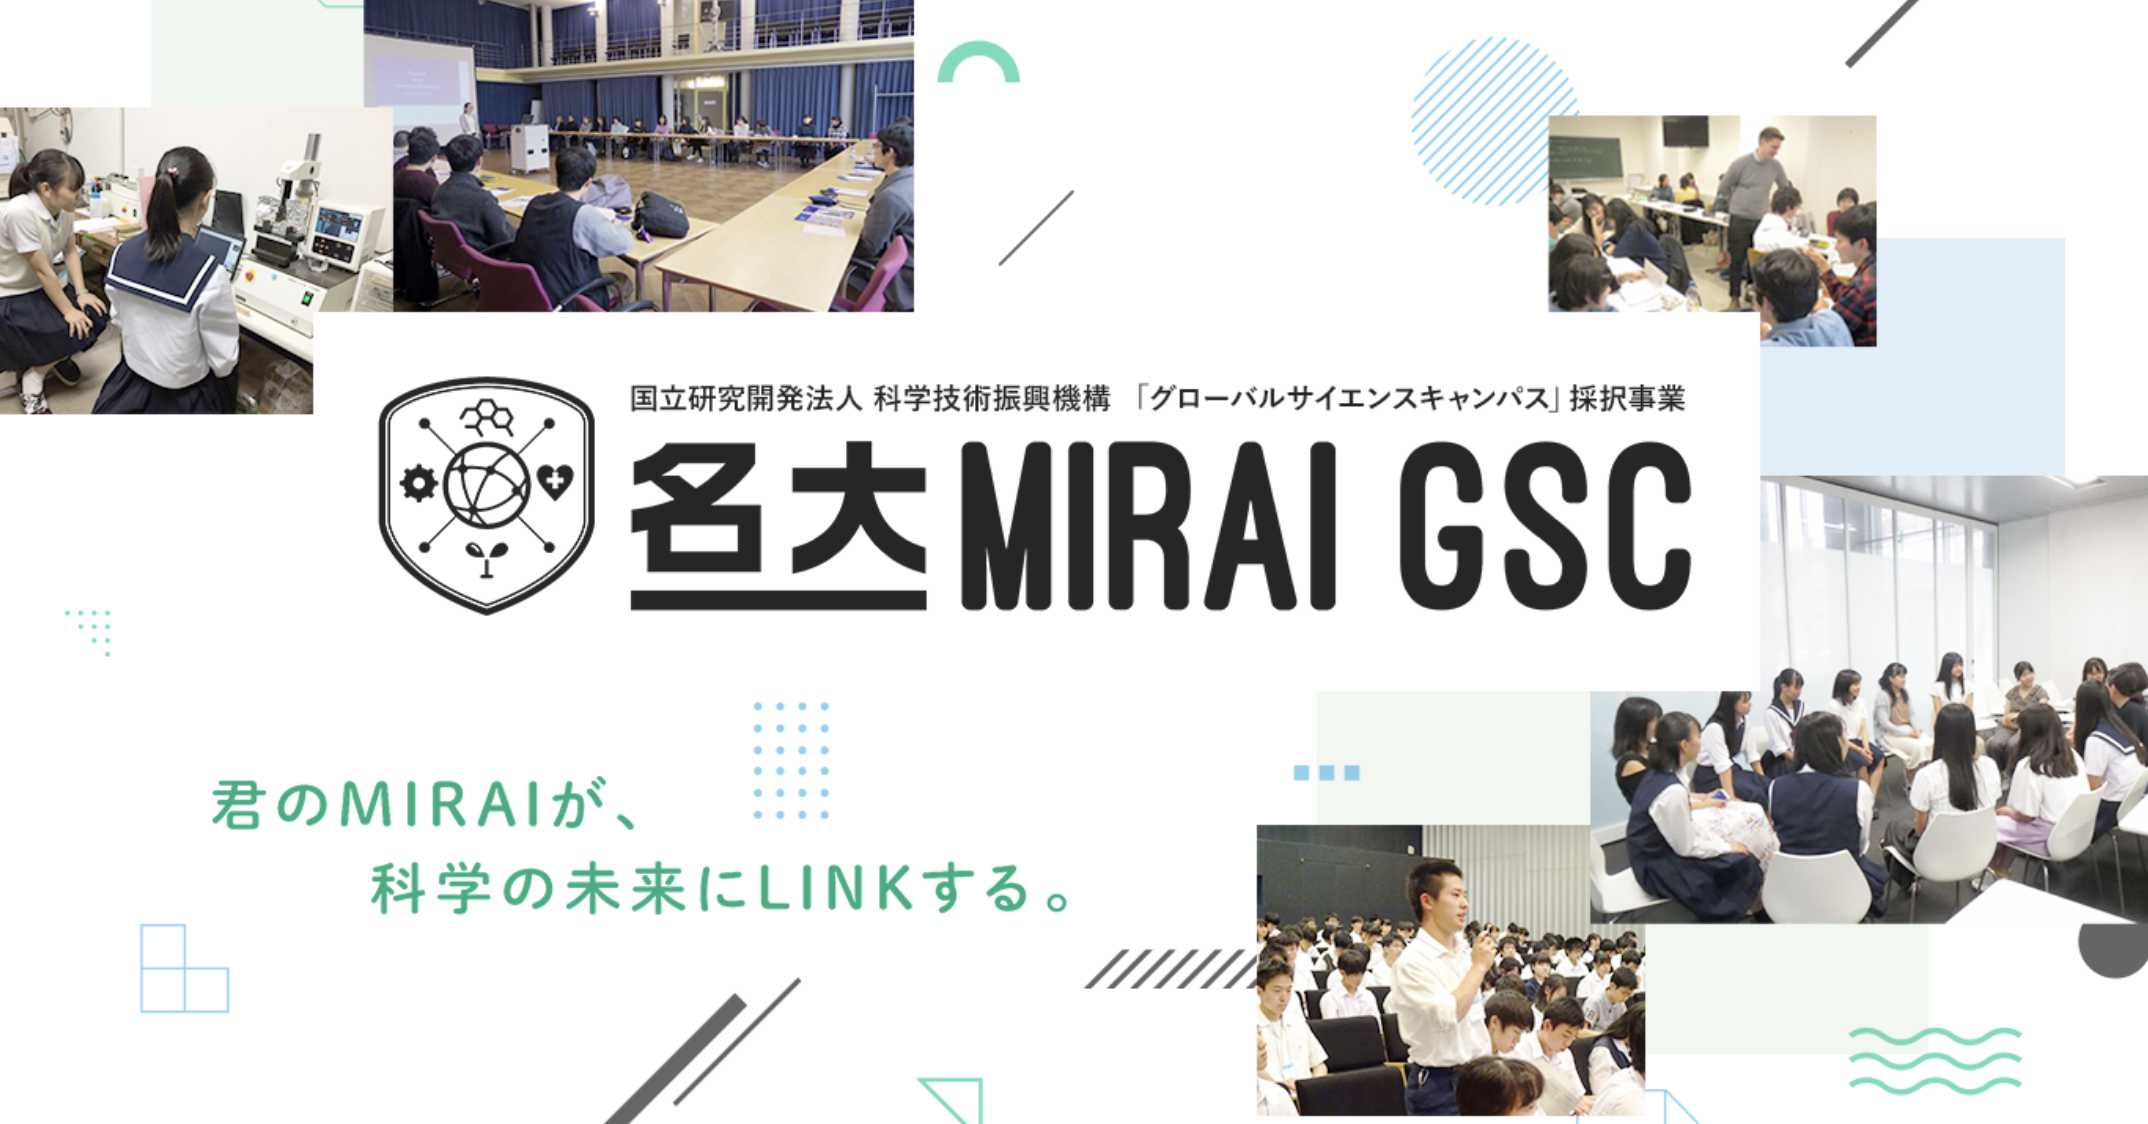 名大 MIRAI GSC：未来の博士人材育成プログラム